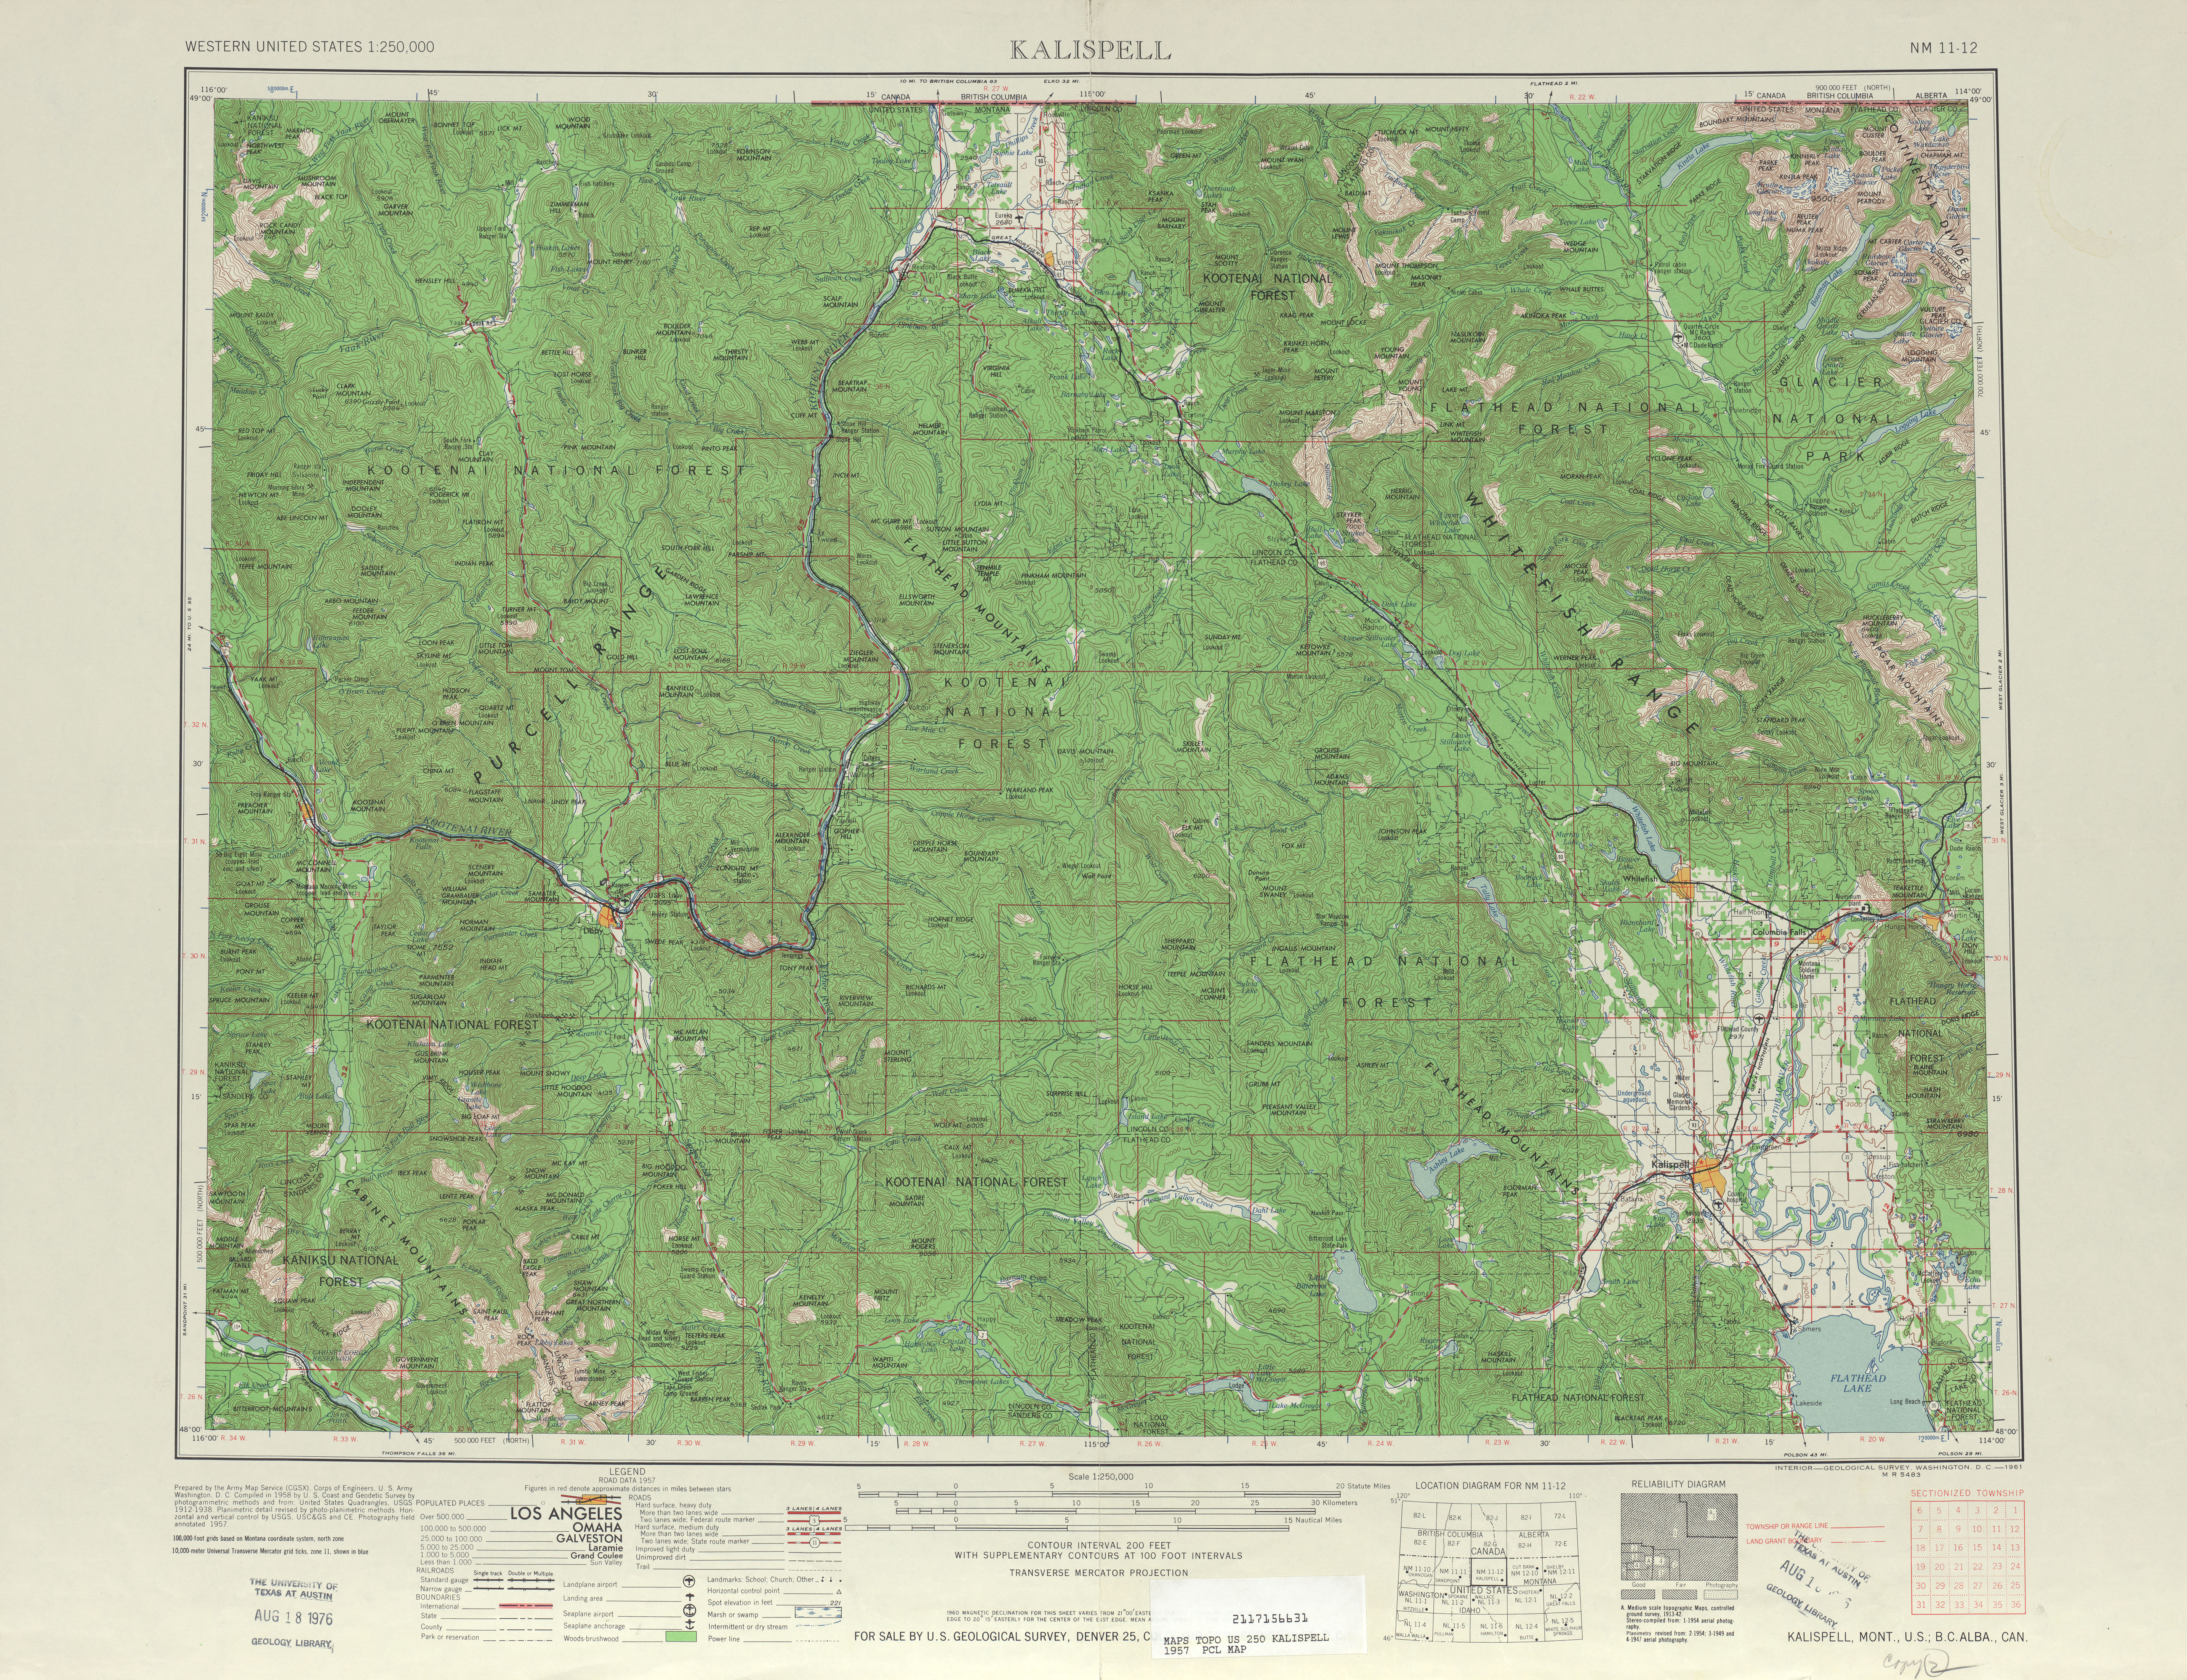 Hoja Kalispell del Mapa Topográfico de los Estados Unidos 1957